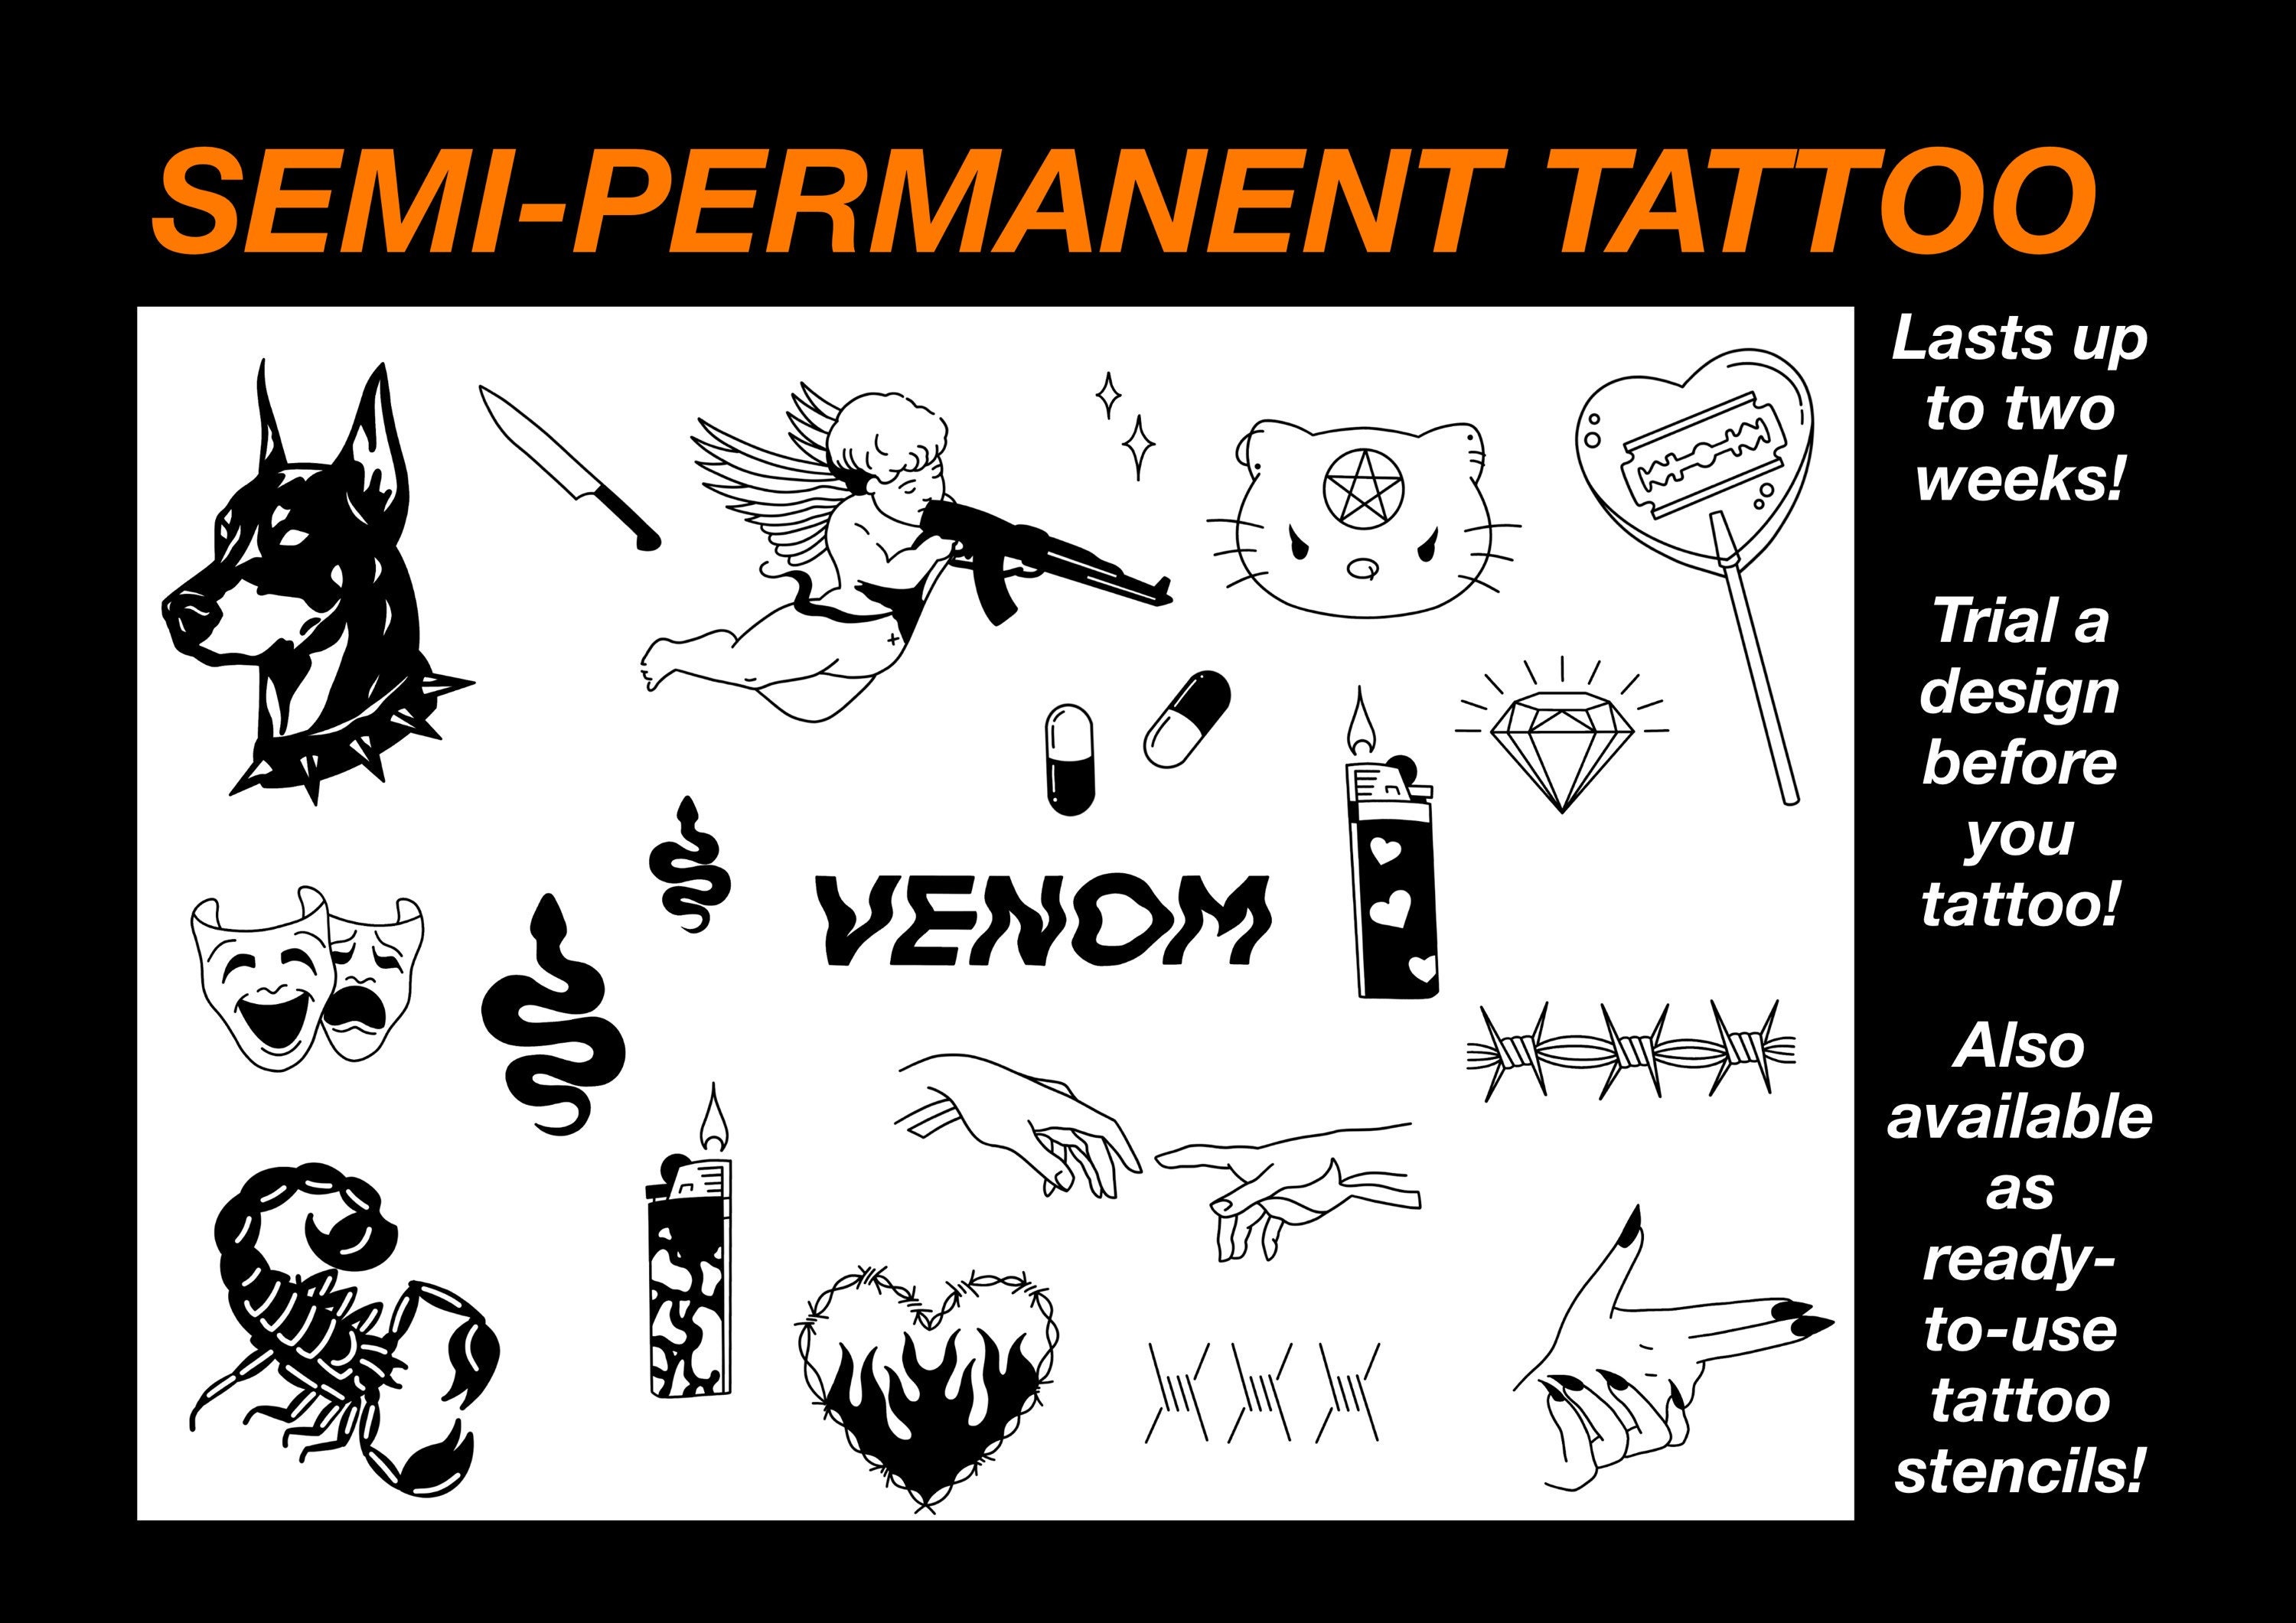 Pre-made Tattoo Stencils, Ready to Use Tattoo Stencils, Tattoo